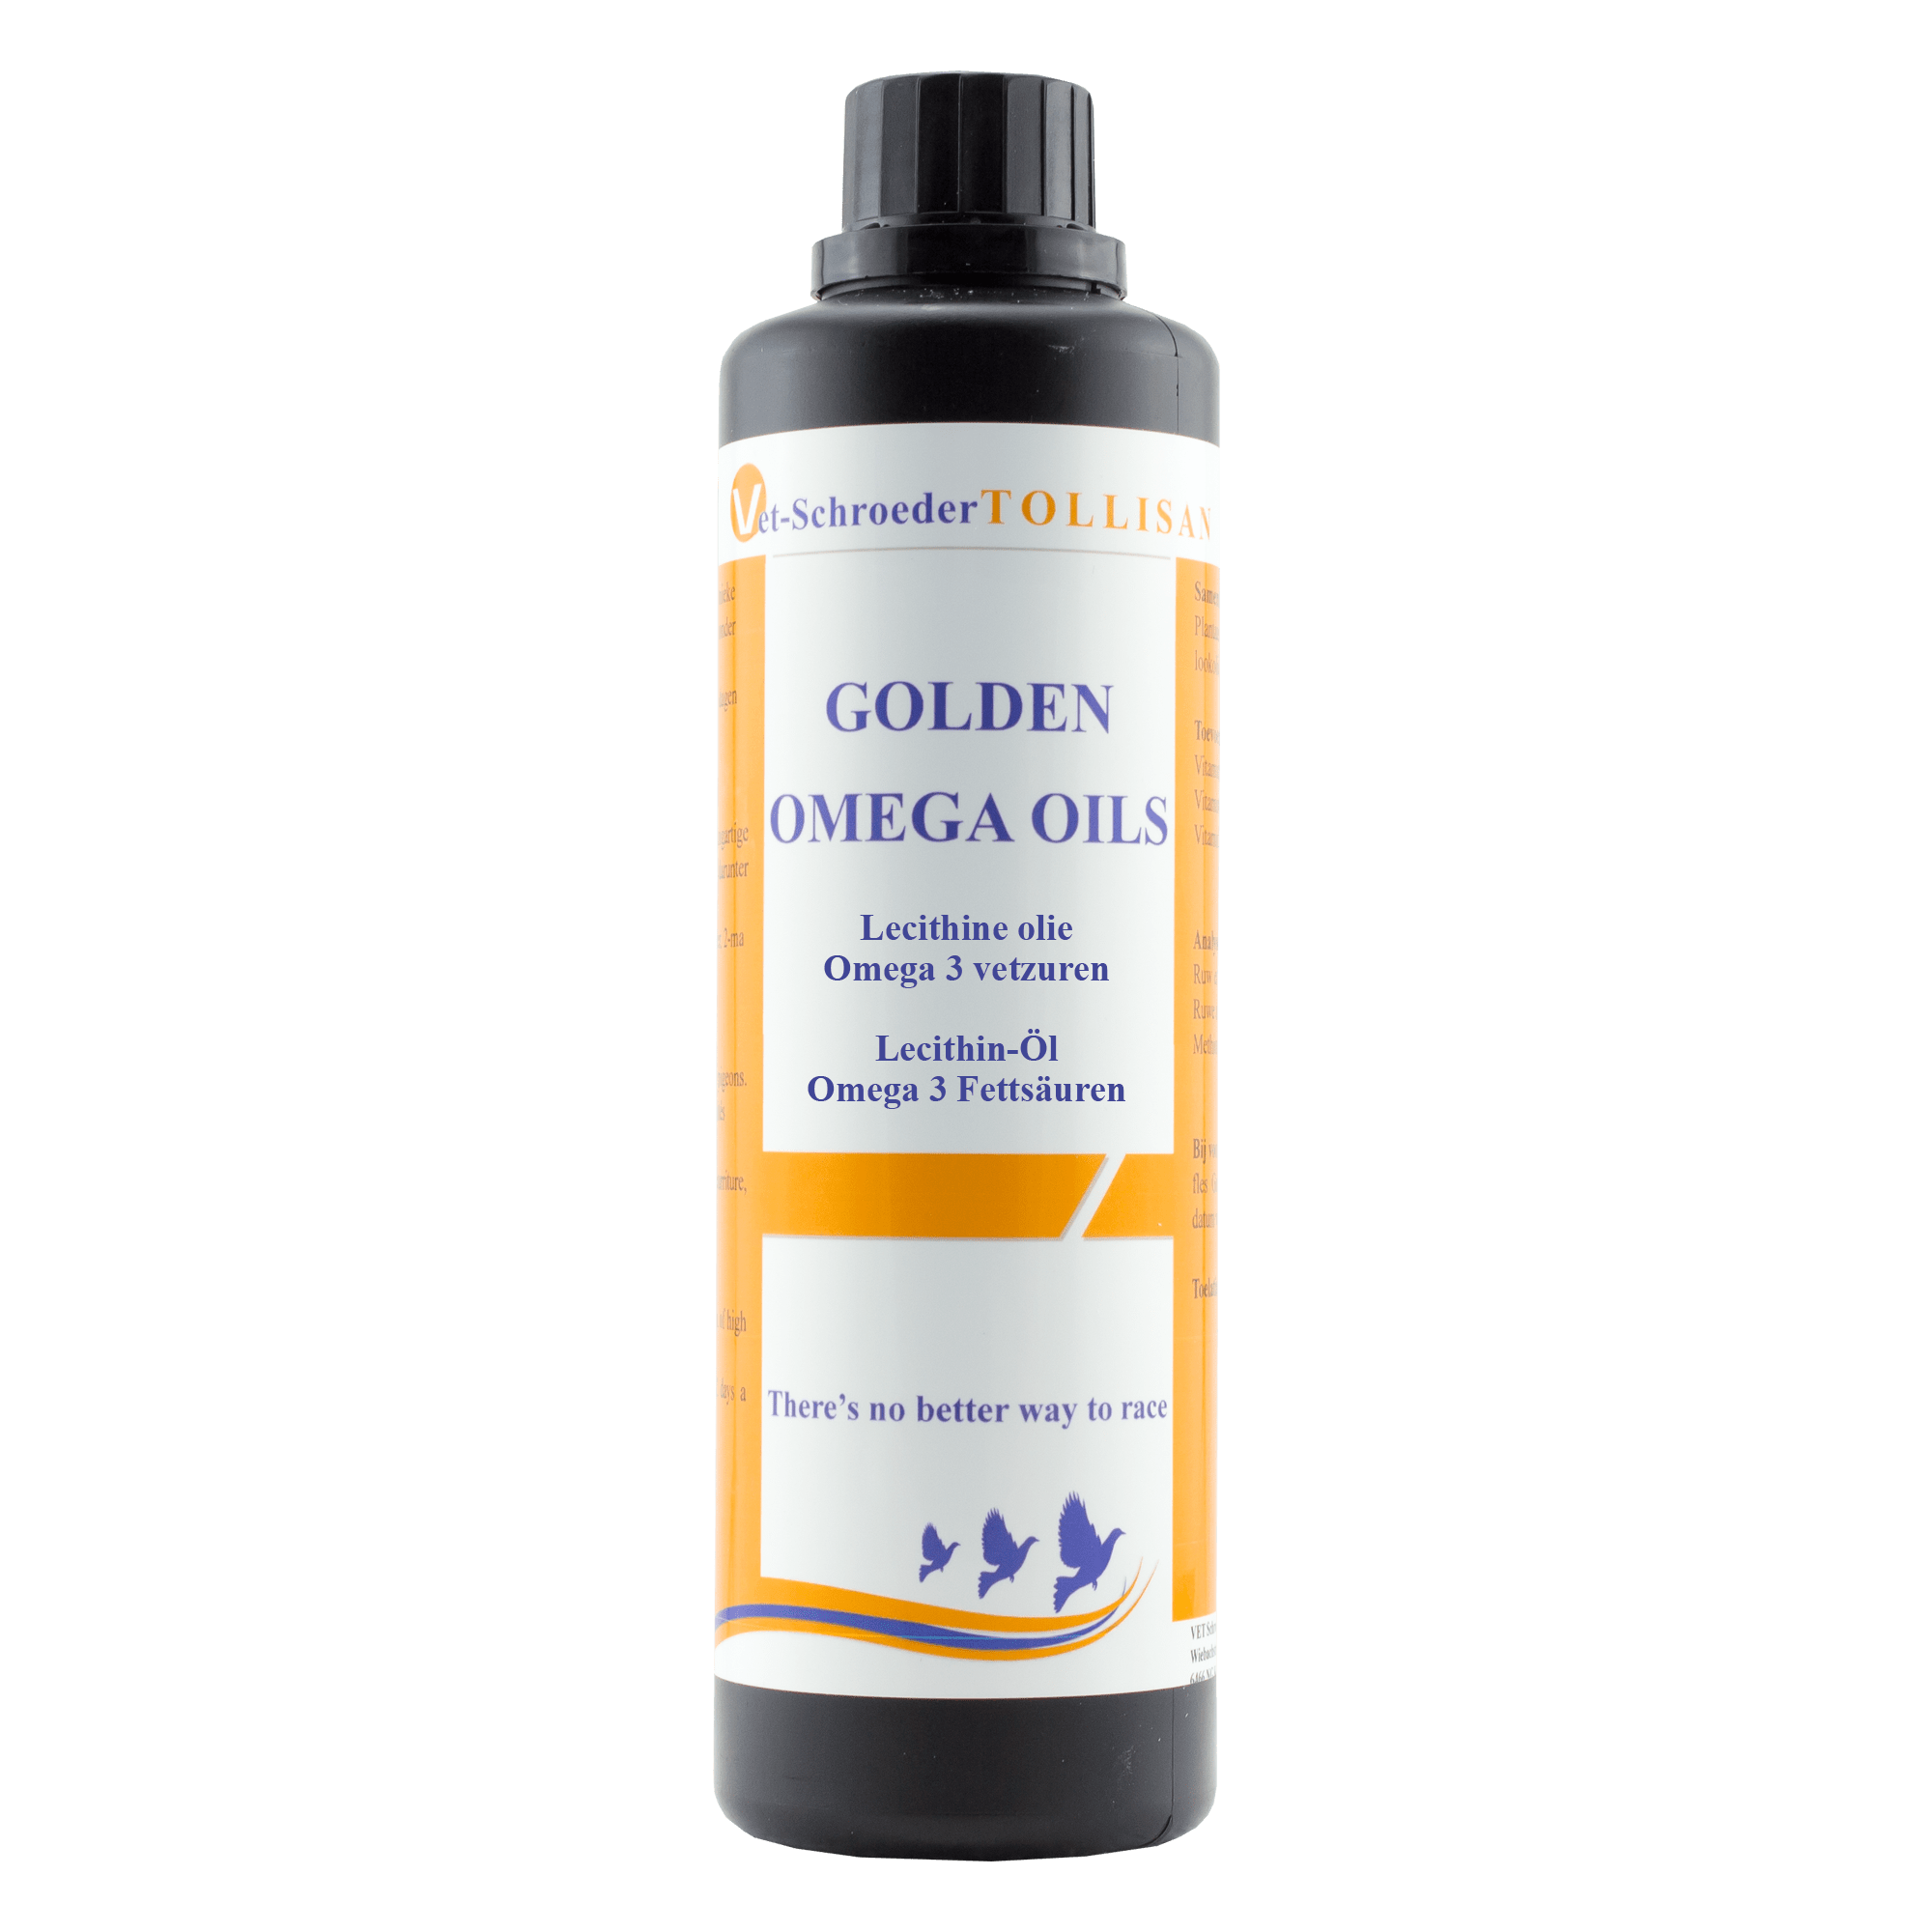 Golden omega oils Tolisan 500ml